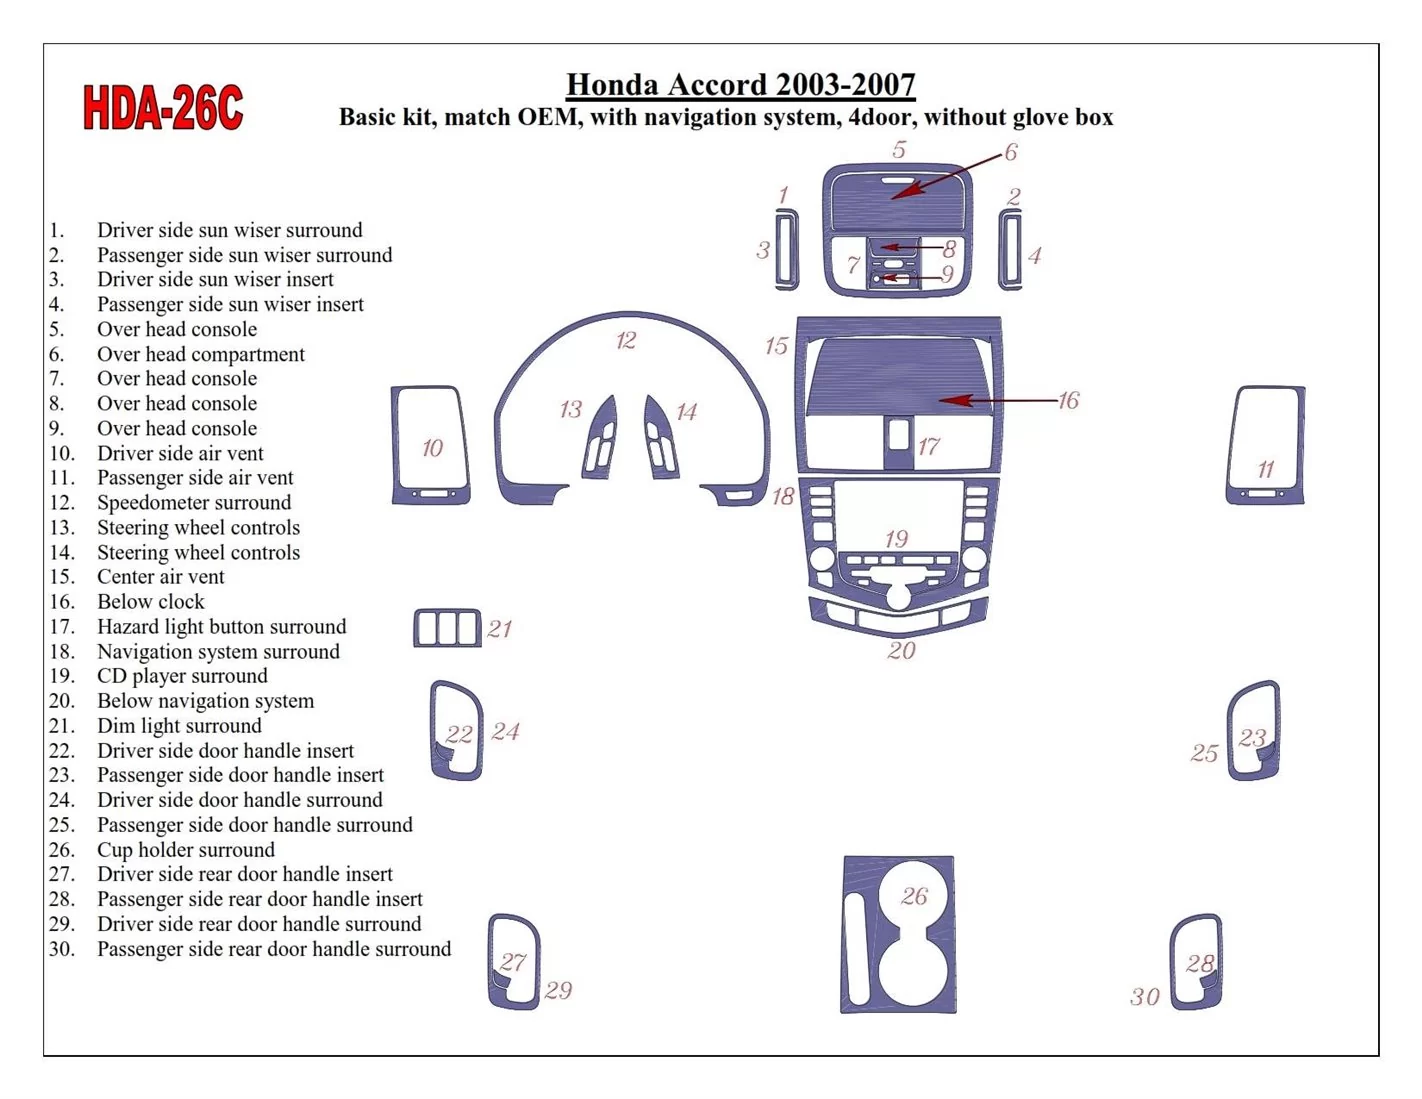 Honda Accord 2003-2007 Paquet de base, OEM Compliance, Avec NAVI system, Sans lueur-boîte, 4 Des portes BD Décoration de tableau